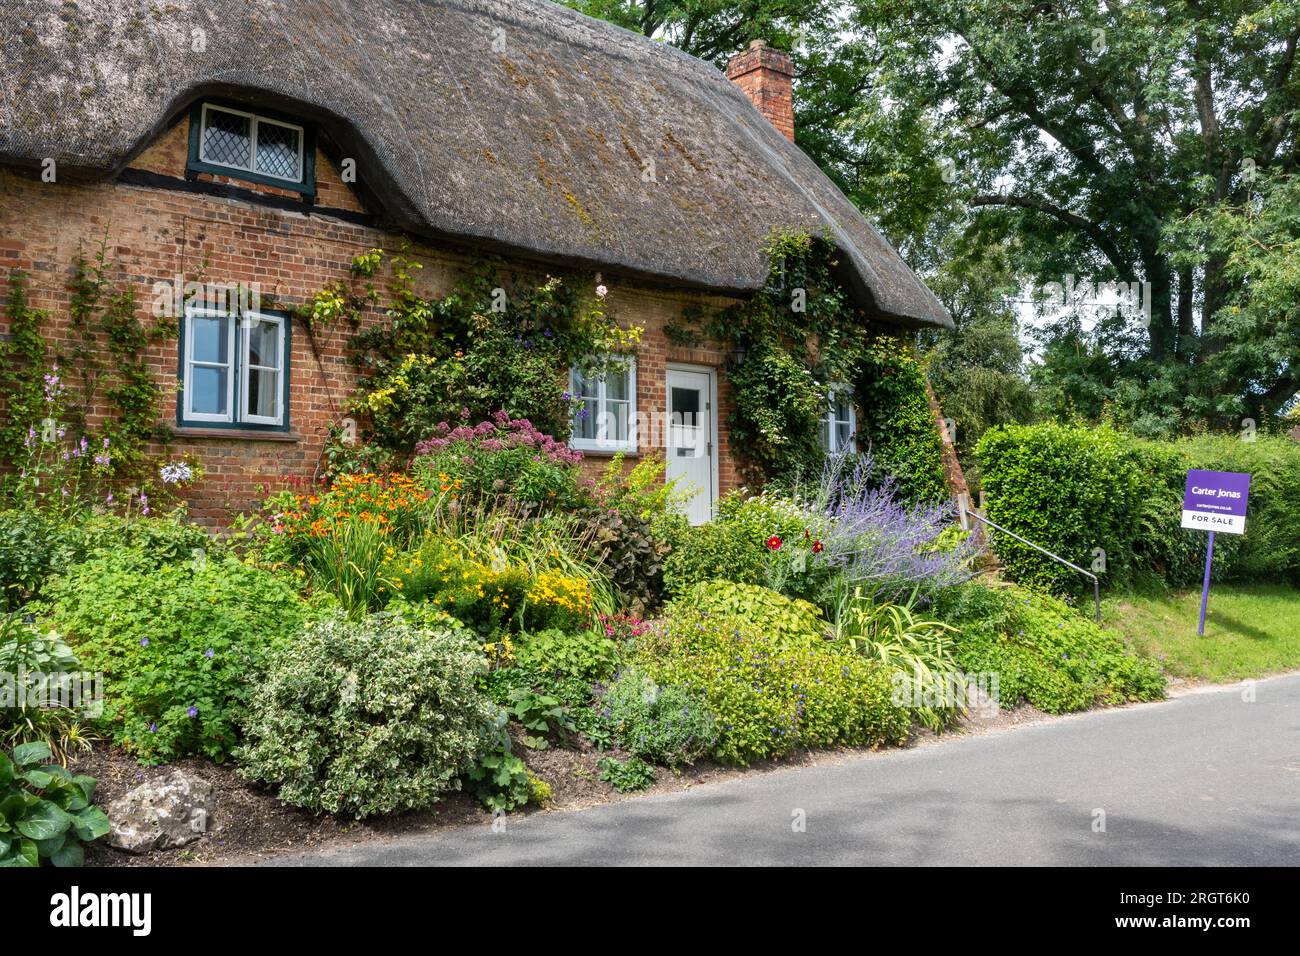 Joli chalet de chaume et jardin de fleurs dans le village de Longstock, Hampshire, Angleterre, Royaume-Uni, avec des agents immobiliers à vendre conseil. Marché immobilier Banque D'Images